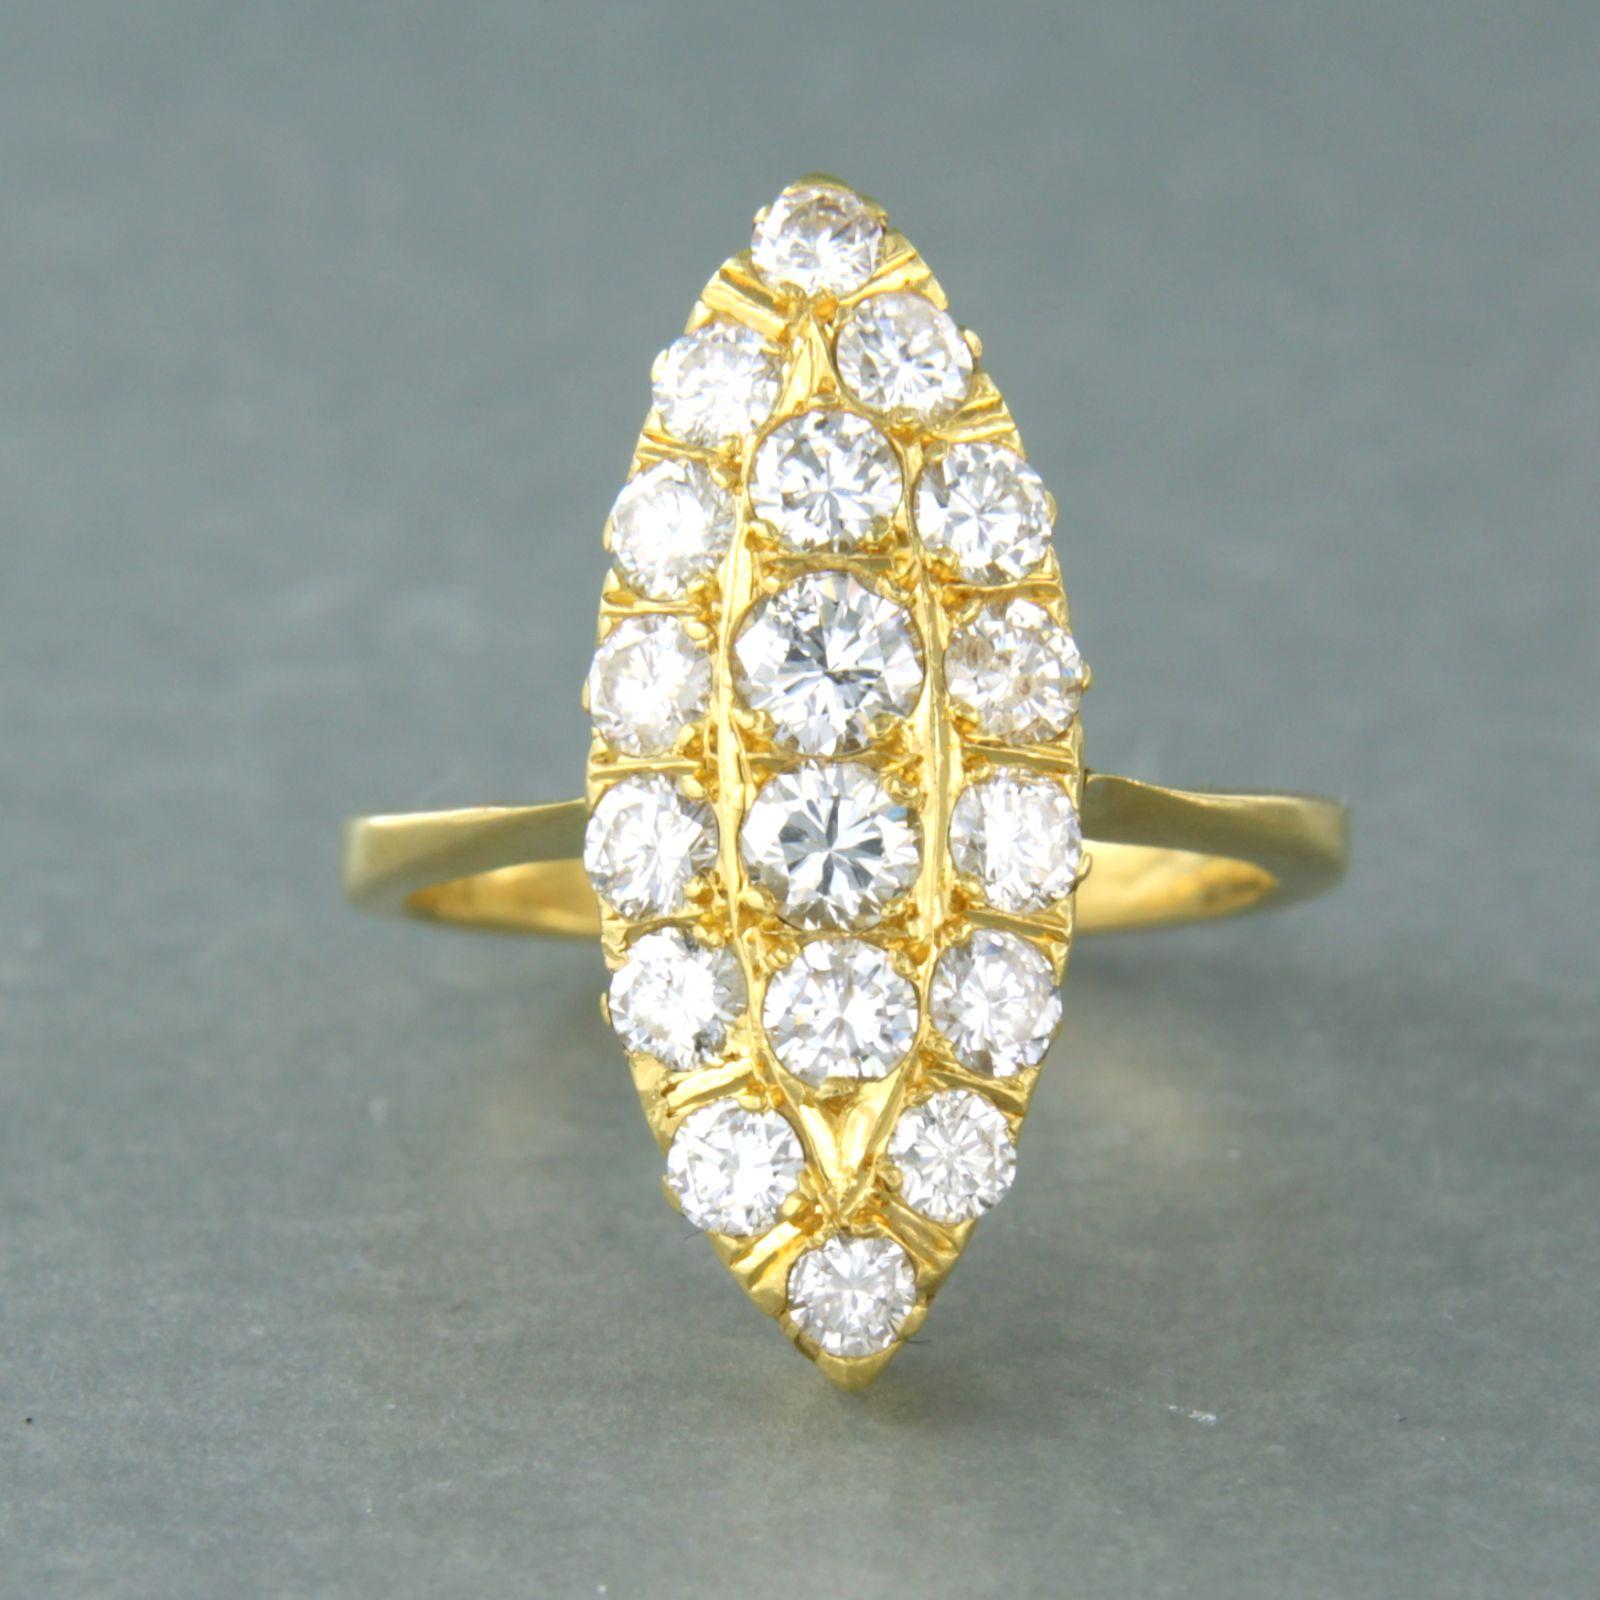 Bague en or jaune 20k avec diamant taille brillant. 1.35ct - H/I - SI/Pique - taille de bague U.S. 6 - EU. 16.5(53)

Description détaillée

le haut de l'anneau mesure 2,2 cm de large et 5,9 mm de haut

Bague taille US 6.5 - EU. 17(53), la bague peut